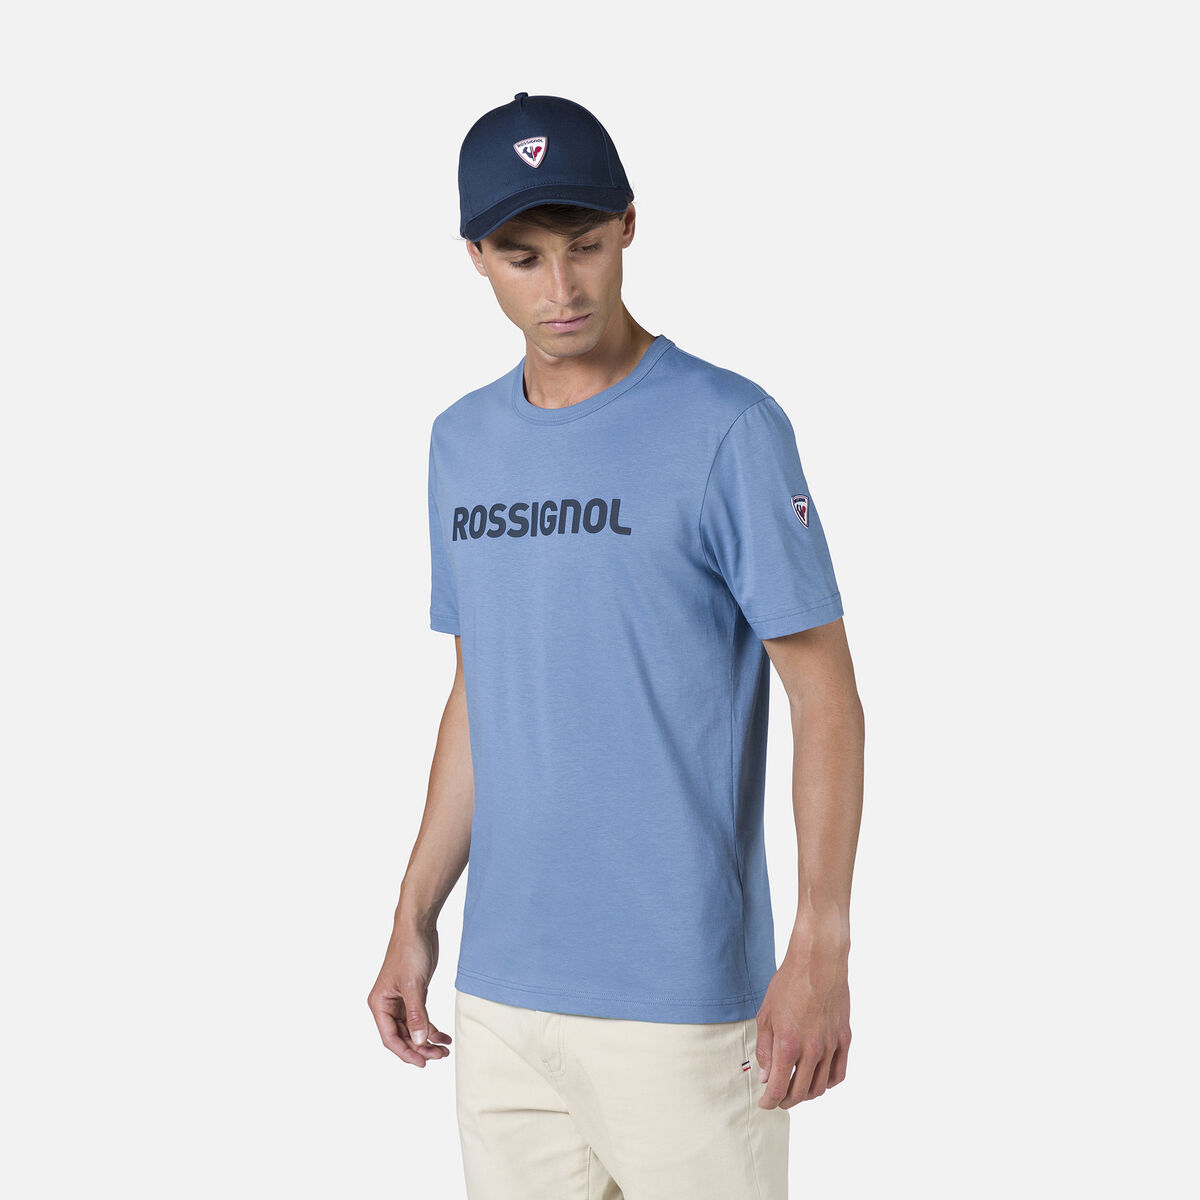 Rossignol Camiseta Rossignol para hombre Blue